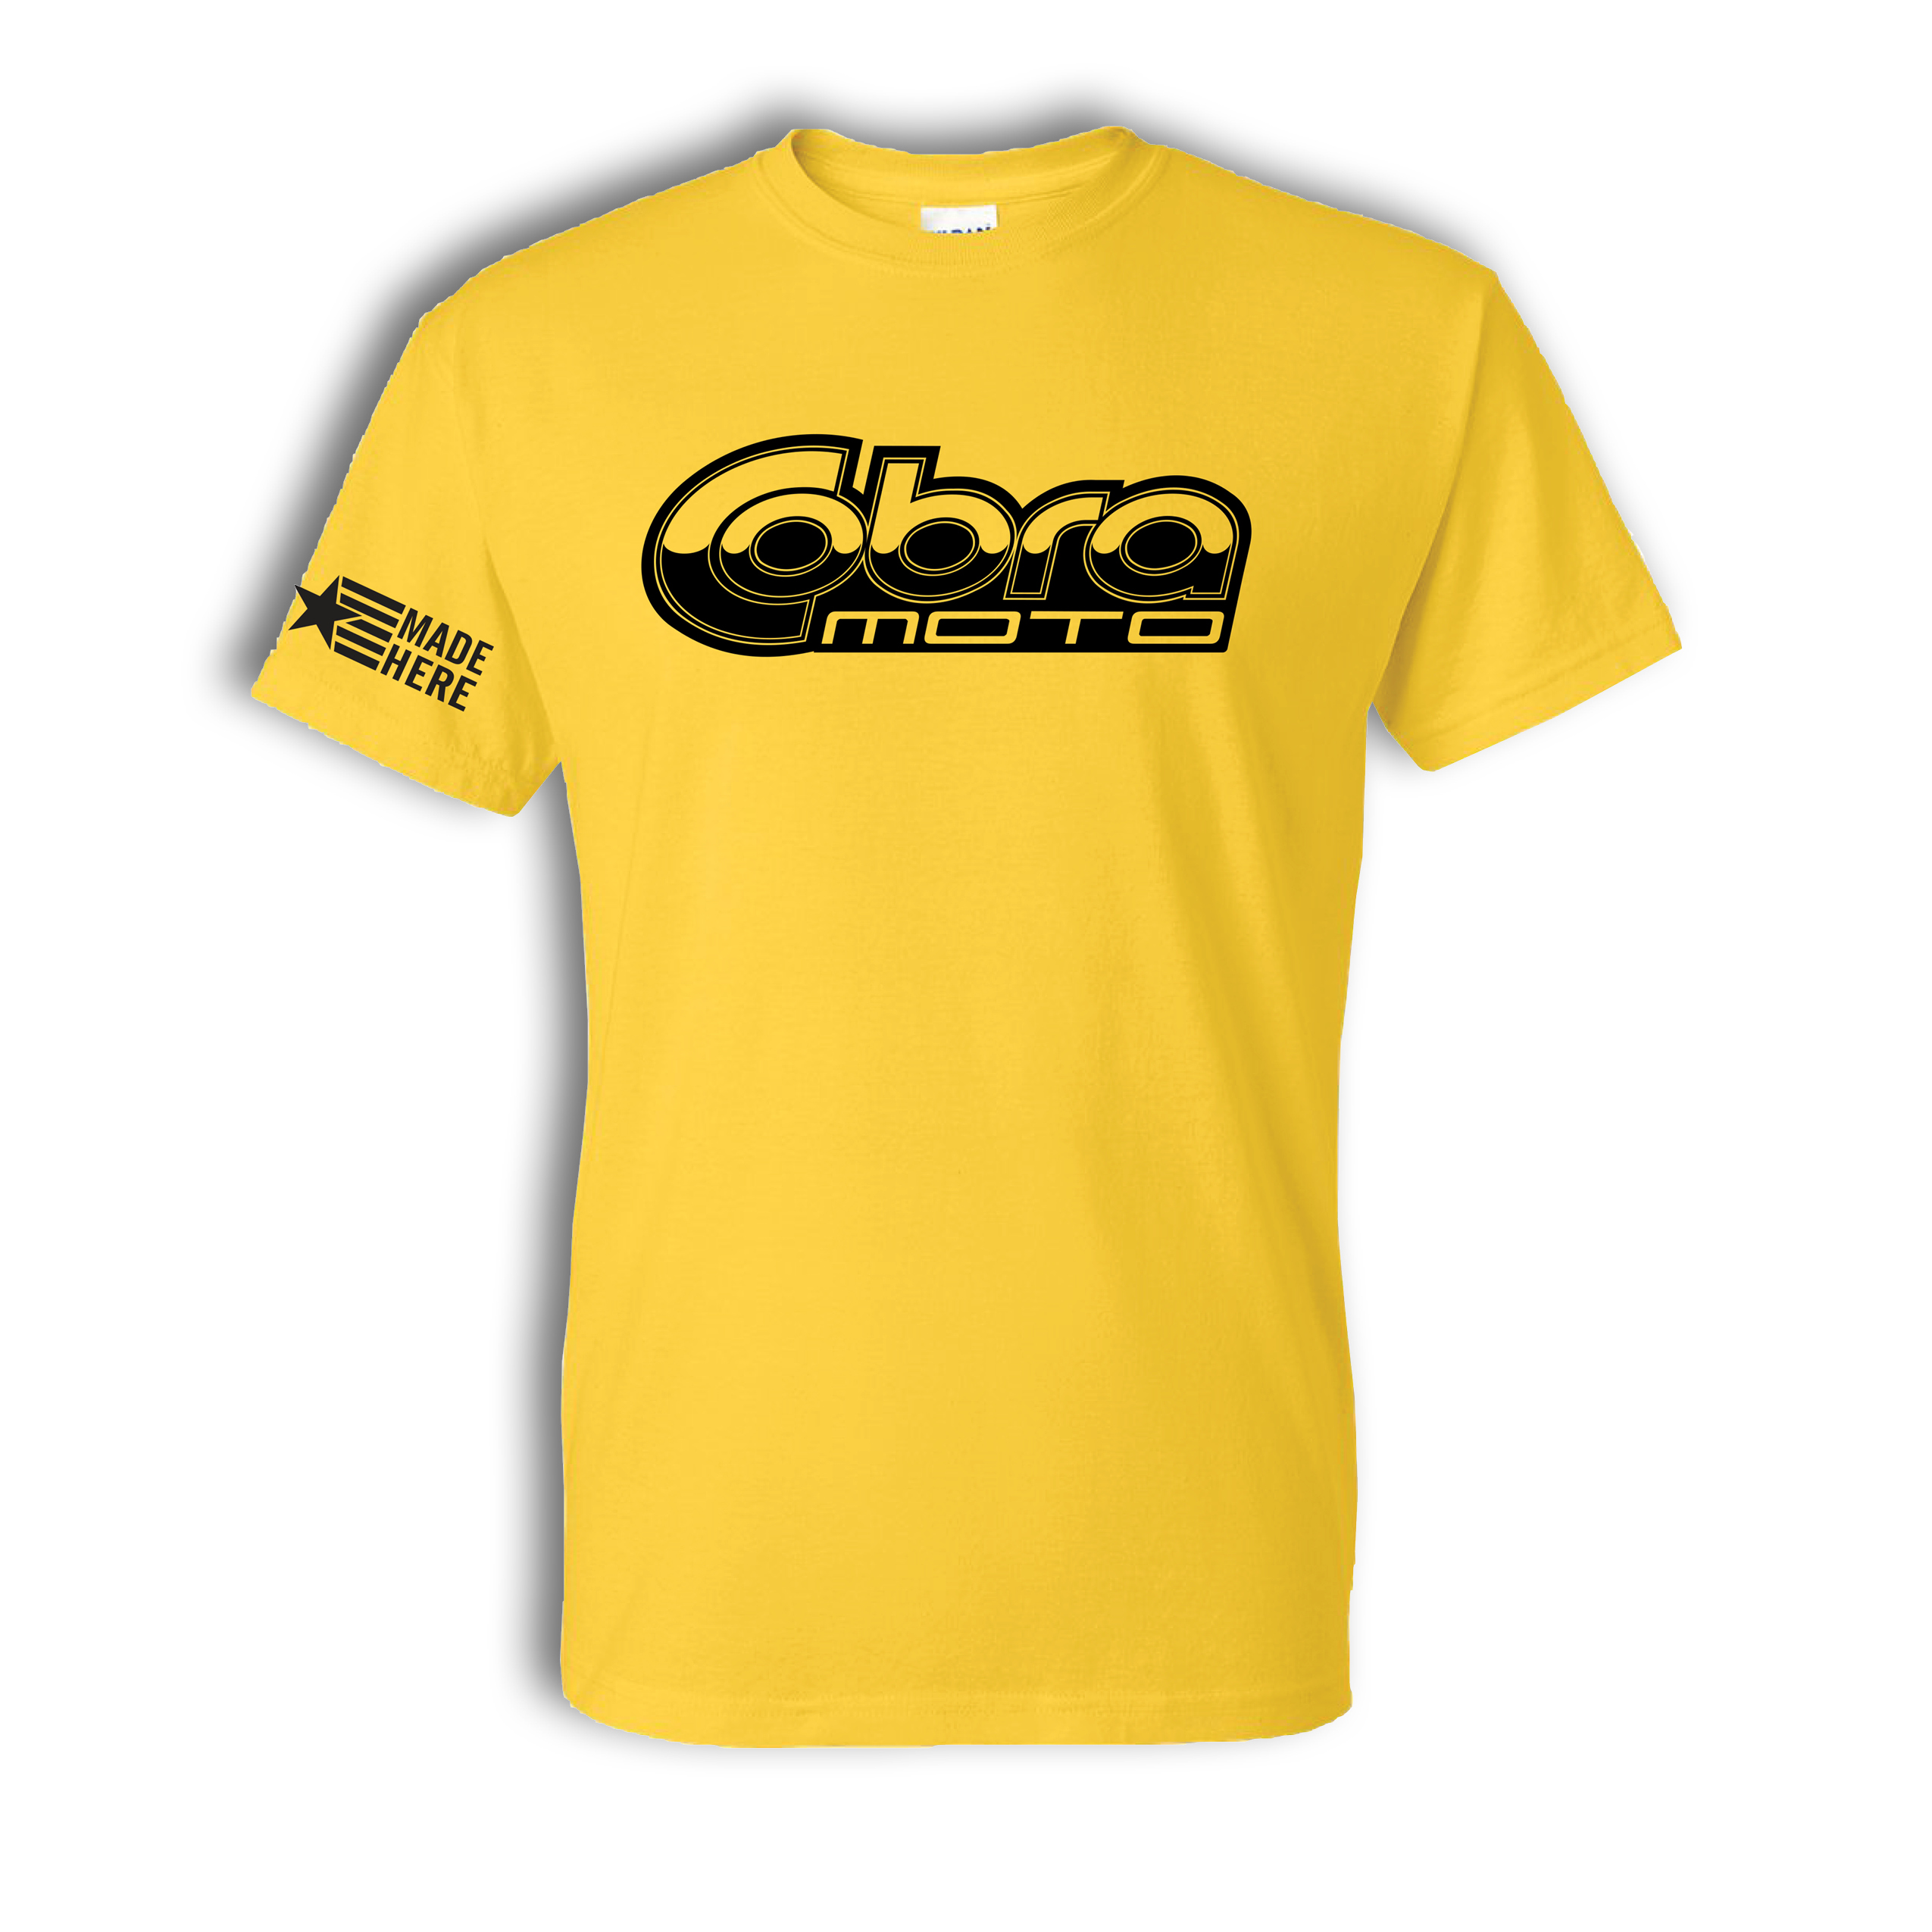 Cobra MOTO Yellow Shirt